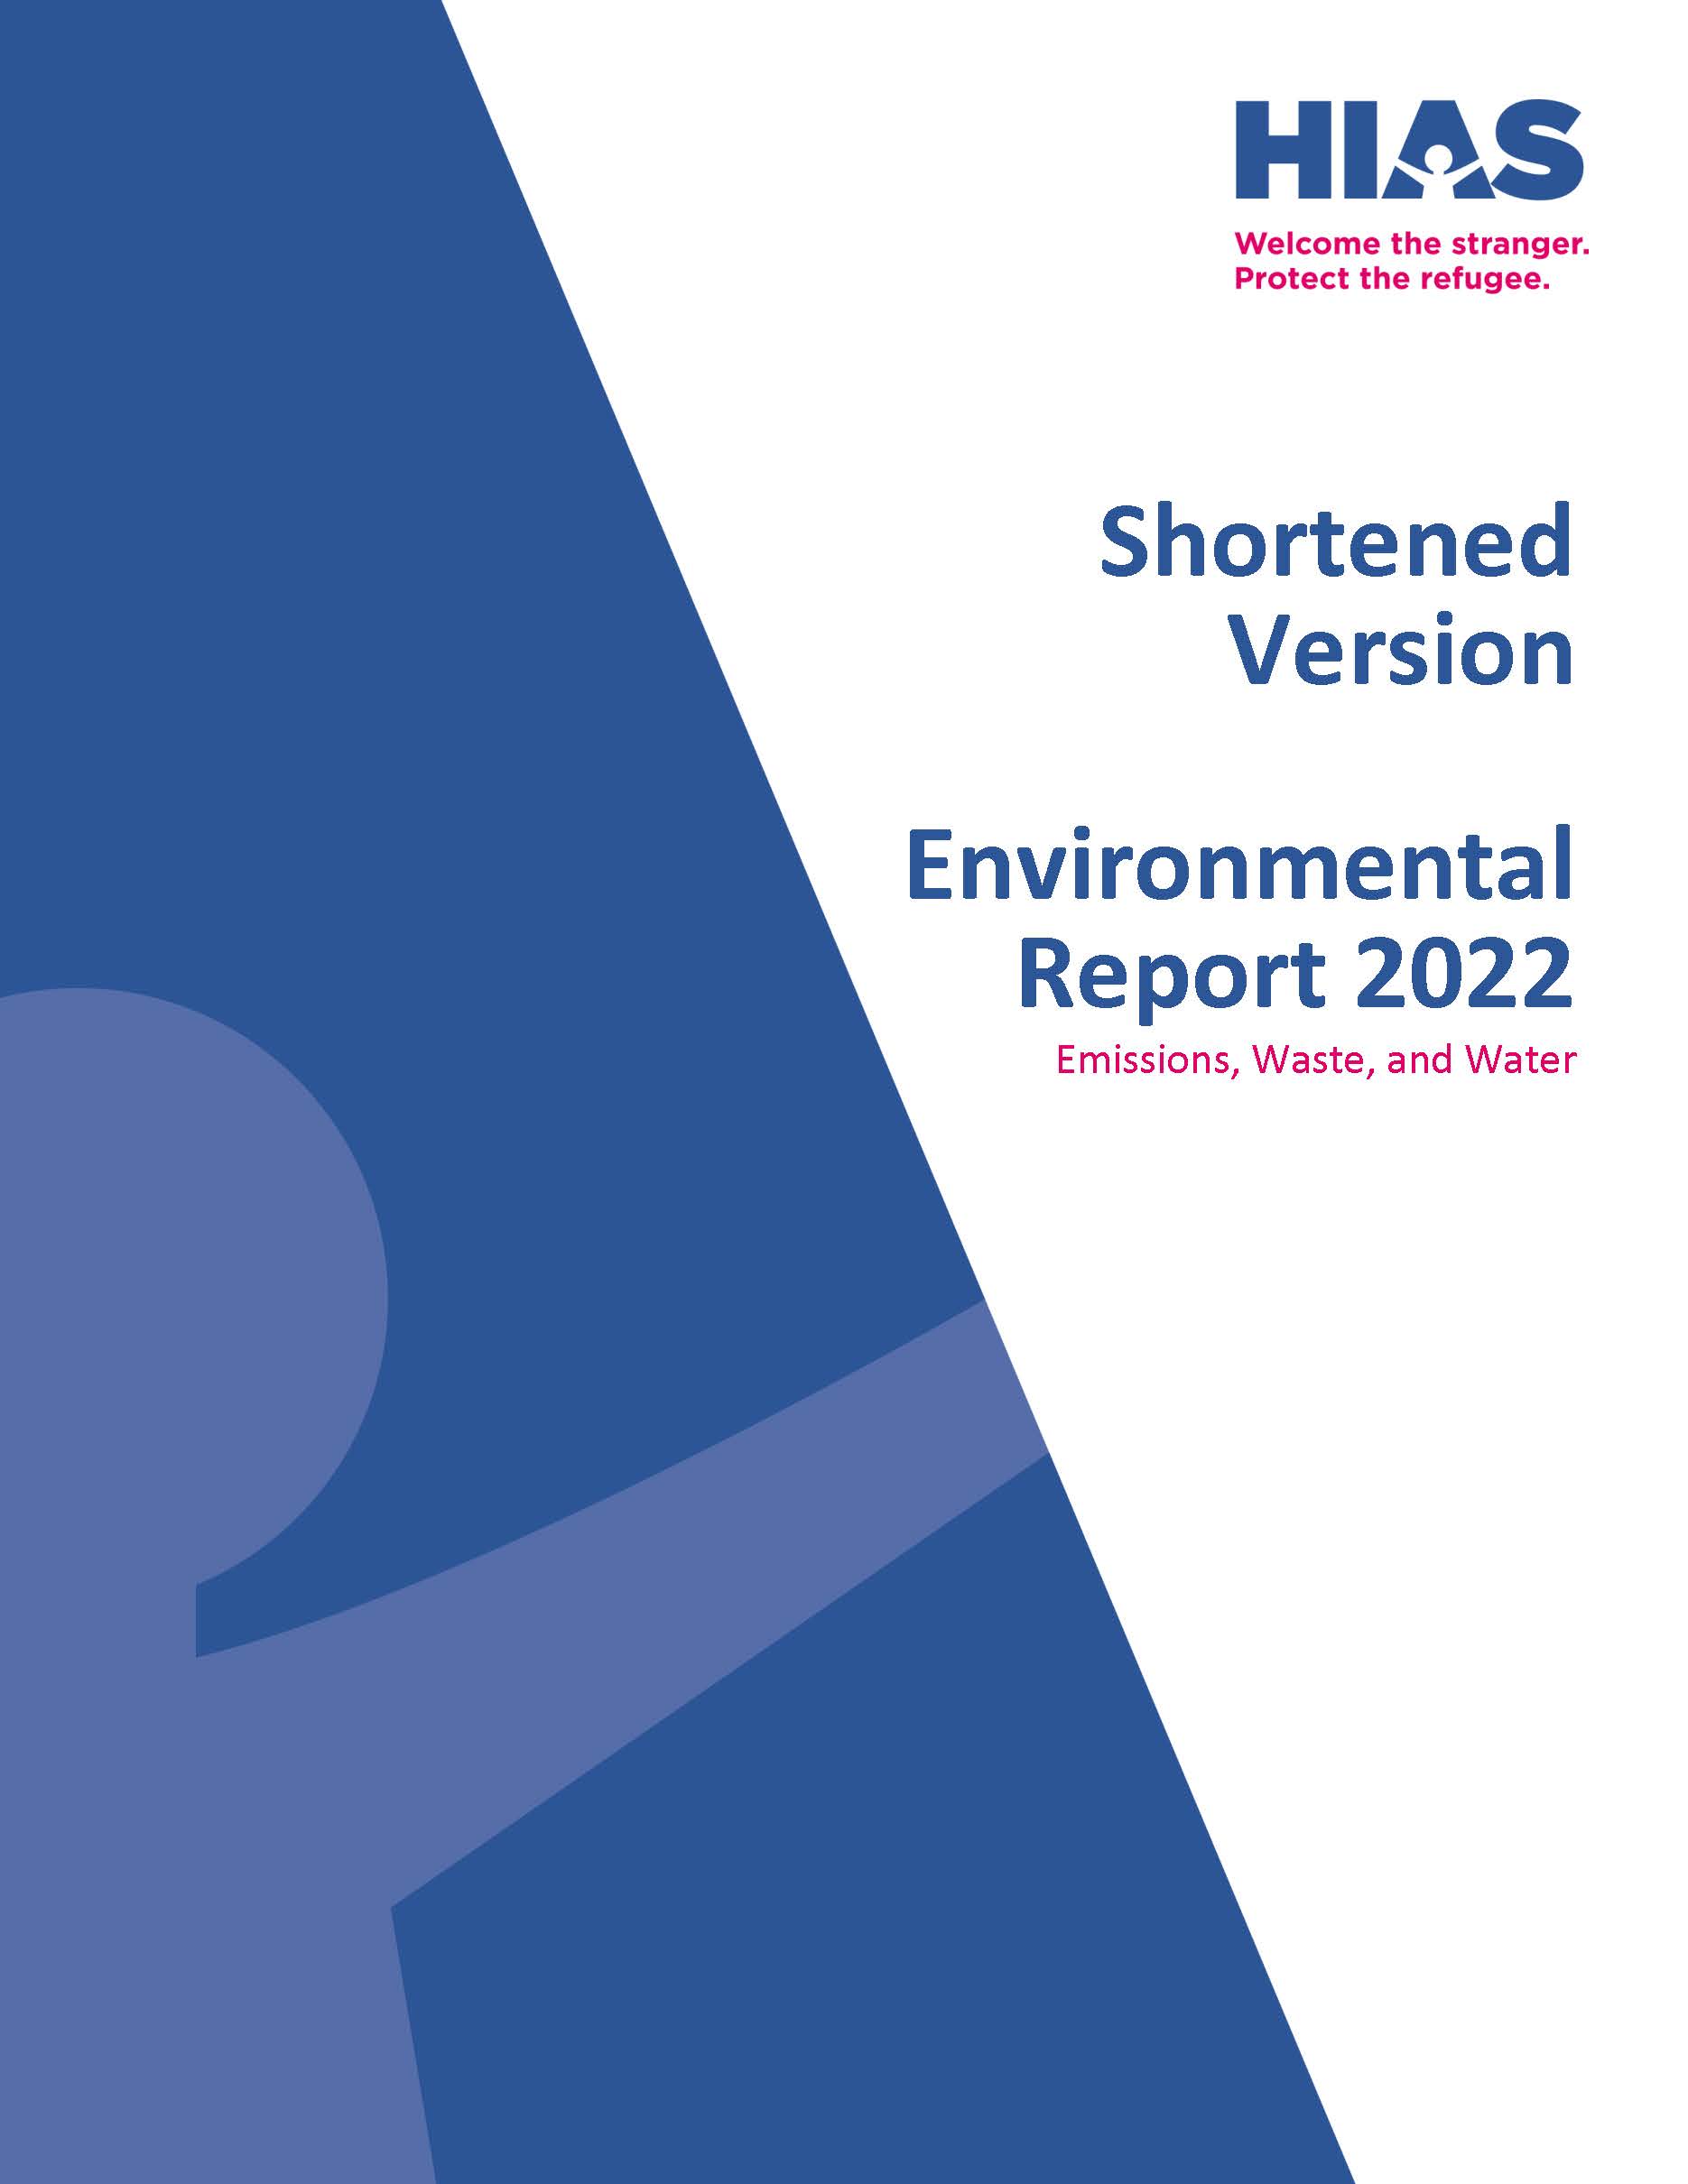 Environmental Report 2022 image